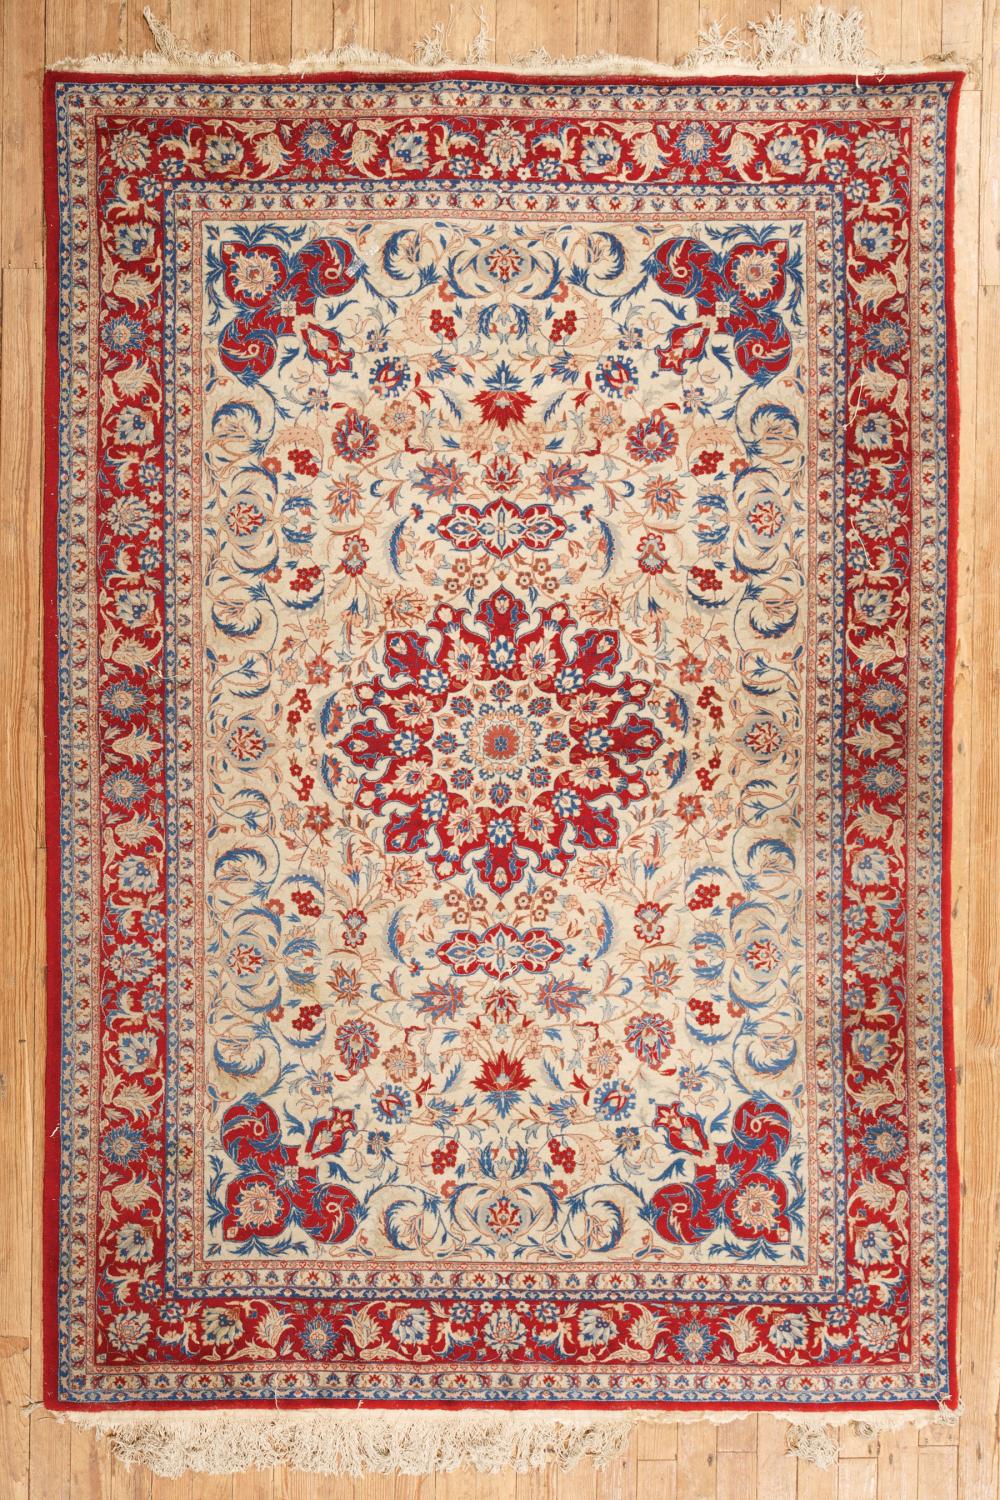 PERSIAN CARPETPersian Carpet  319c65